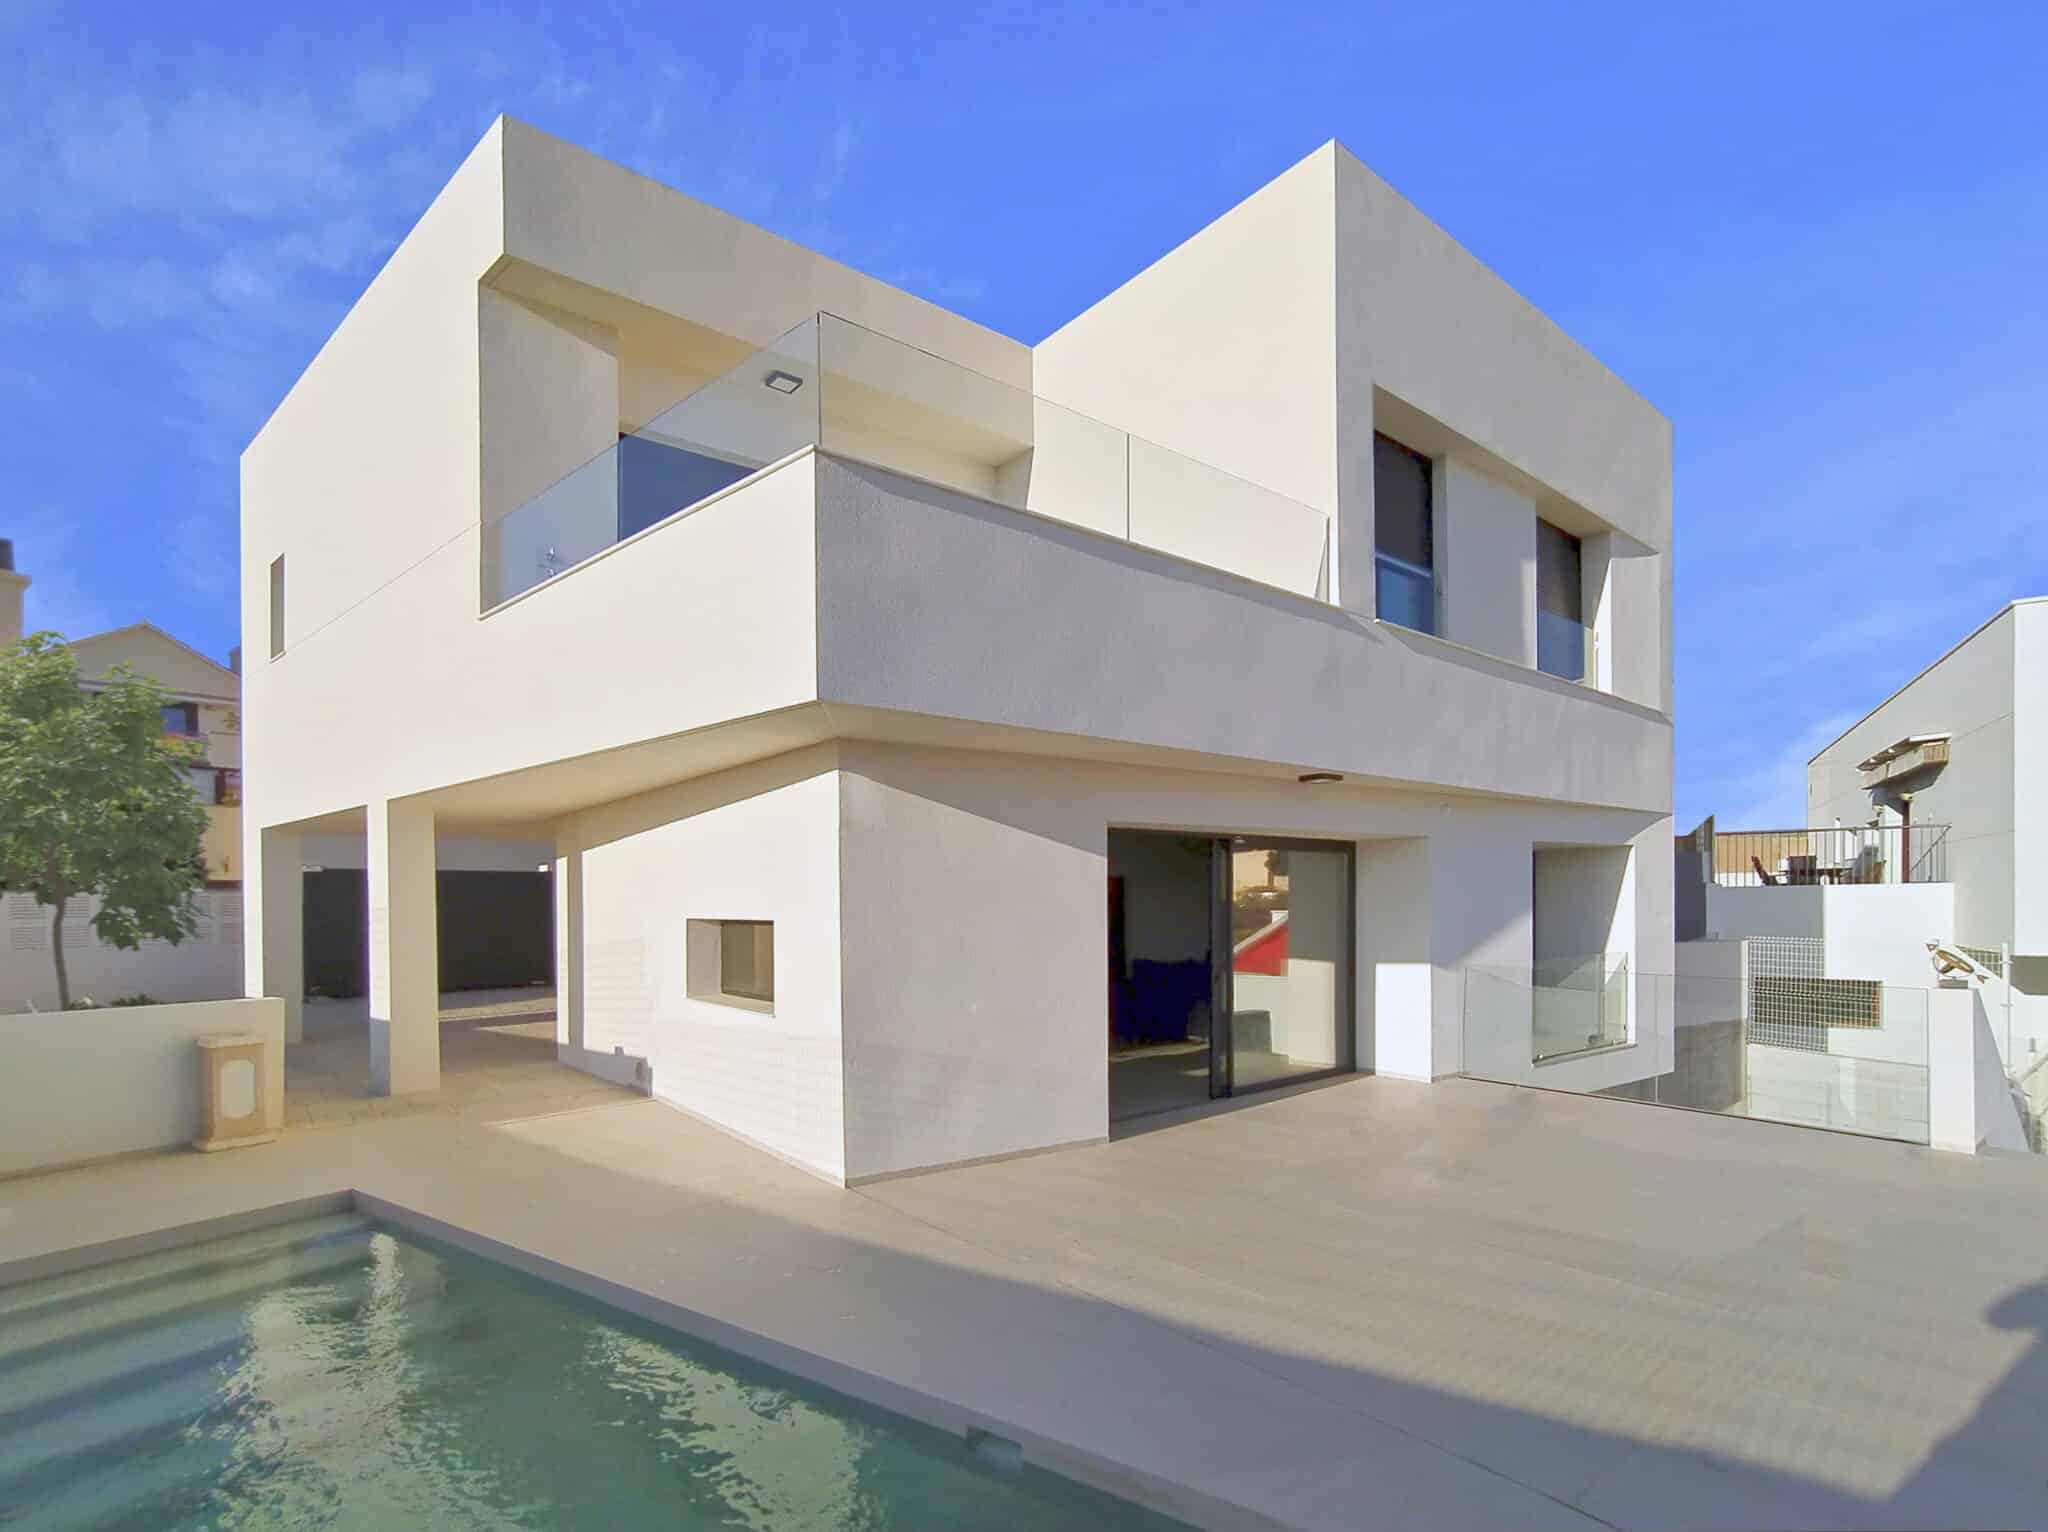 Fachada Sur. Arquitectura contemporánea, volumen blanco con vidrio con voladizos protectores de la radiación solar.